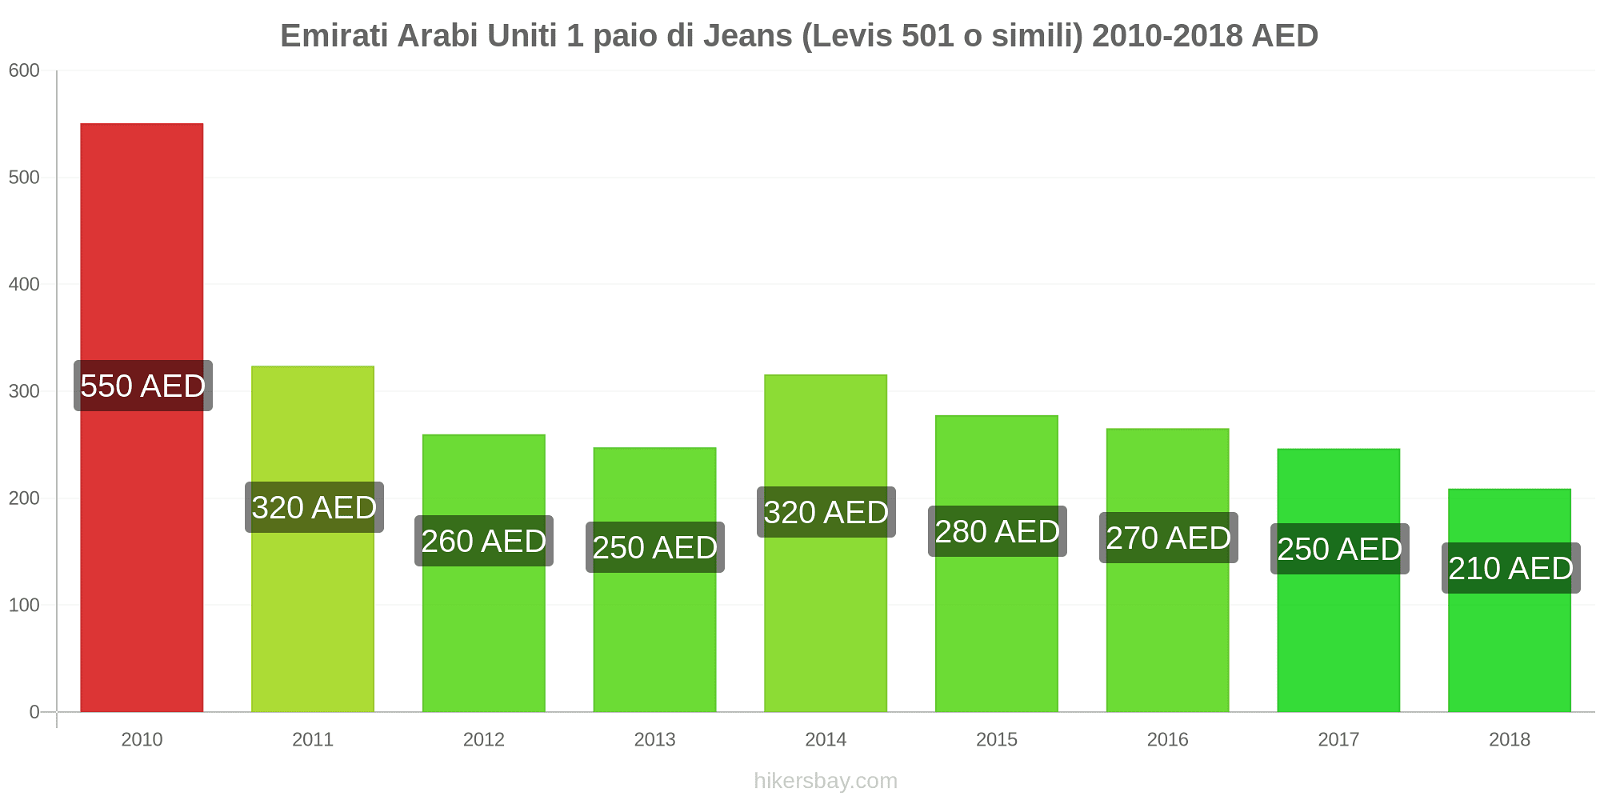 Emirati Arabi Uniti cambi di prezzo 1 paio di jeans (Levis 501 o simili) hikersbay.com